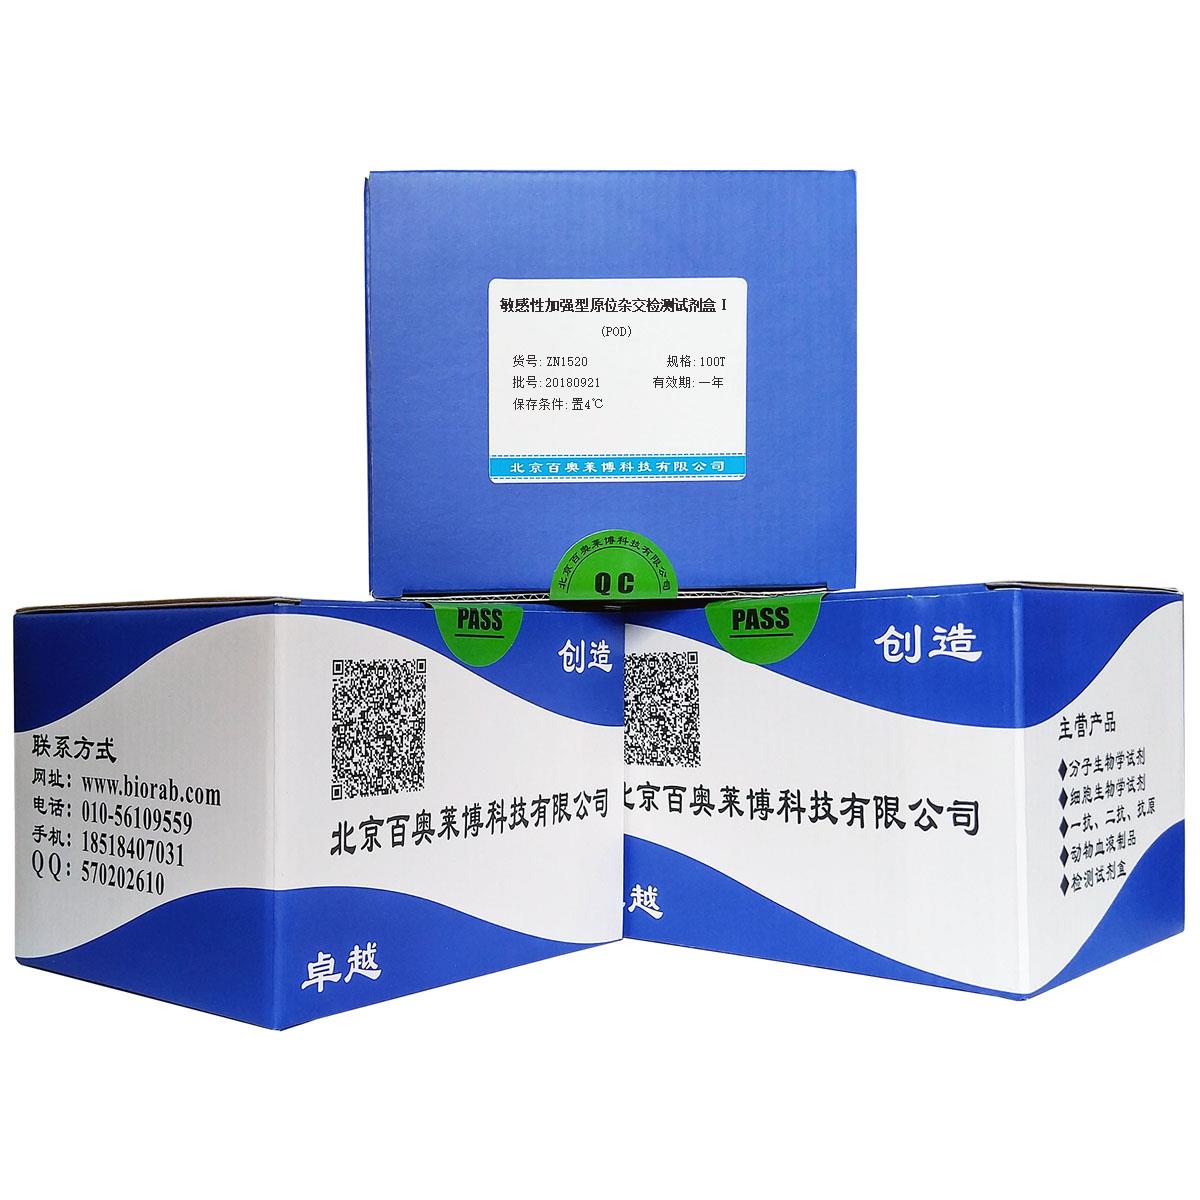 敏感性加强型原位杂交检测试剂盒Ⅰ(POD)